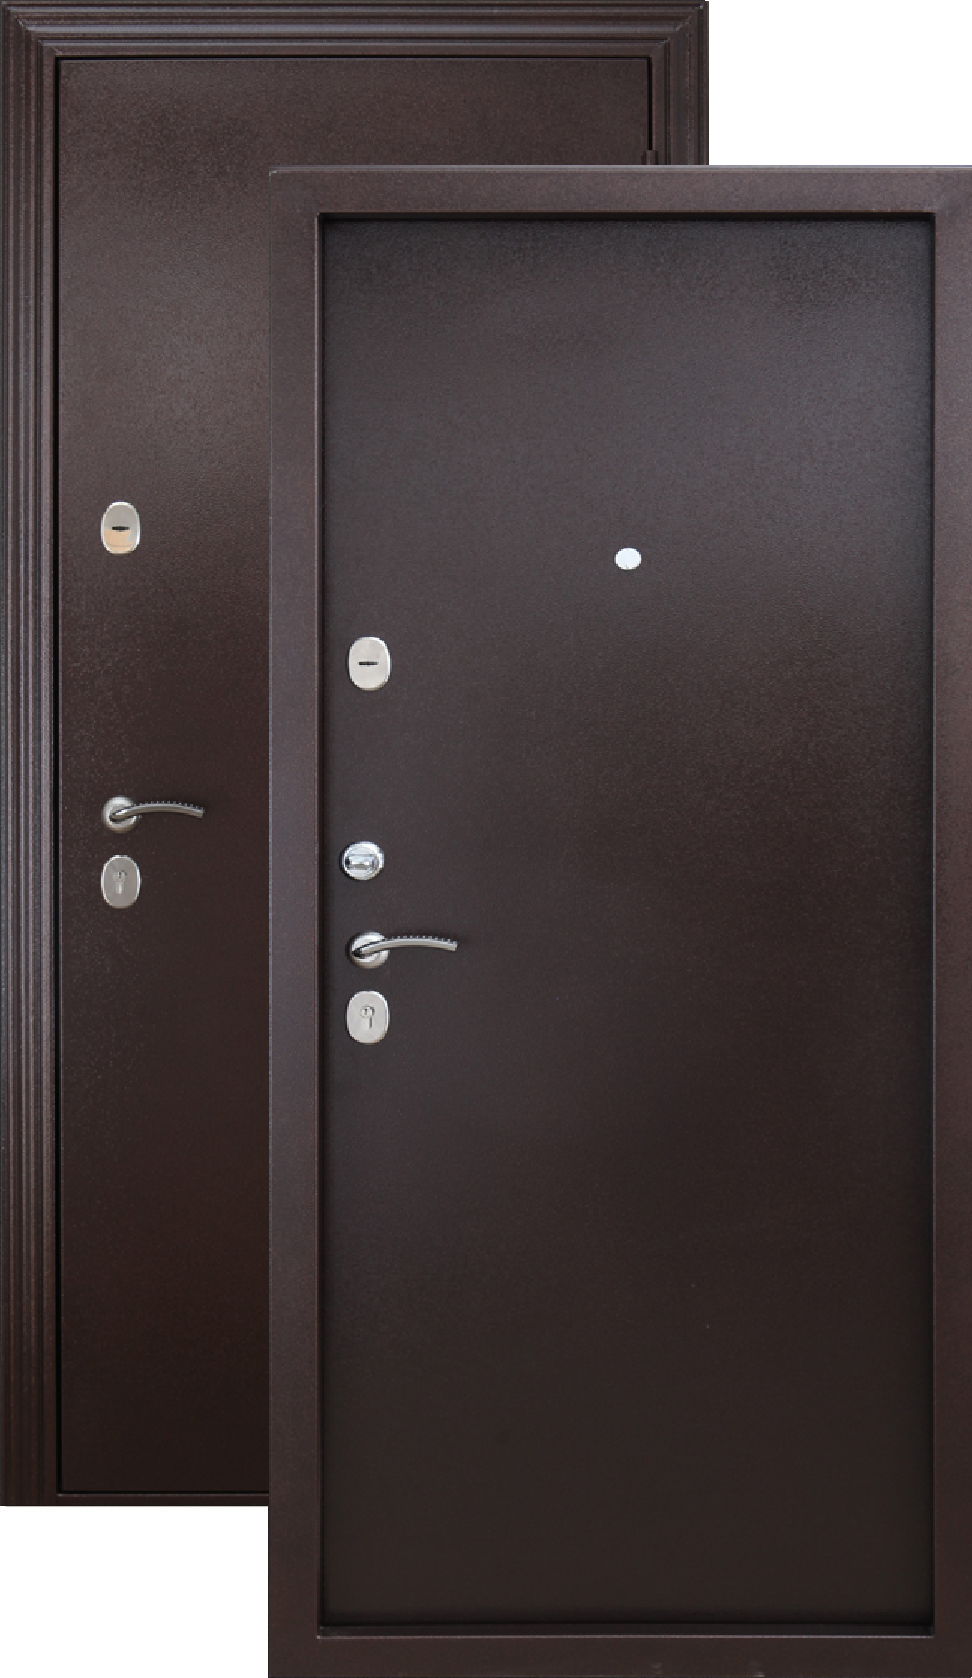 Входная дверь сибирь с терморазрывом. Дверь входная Гарда медный антик. Дверь Гарда металл/металл медный антик. Дверь металлическая 7,5см Гарда 960х2050мм металл/металл левая. Дверь металл Isoterma медный антик.